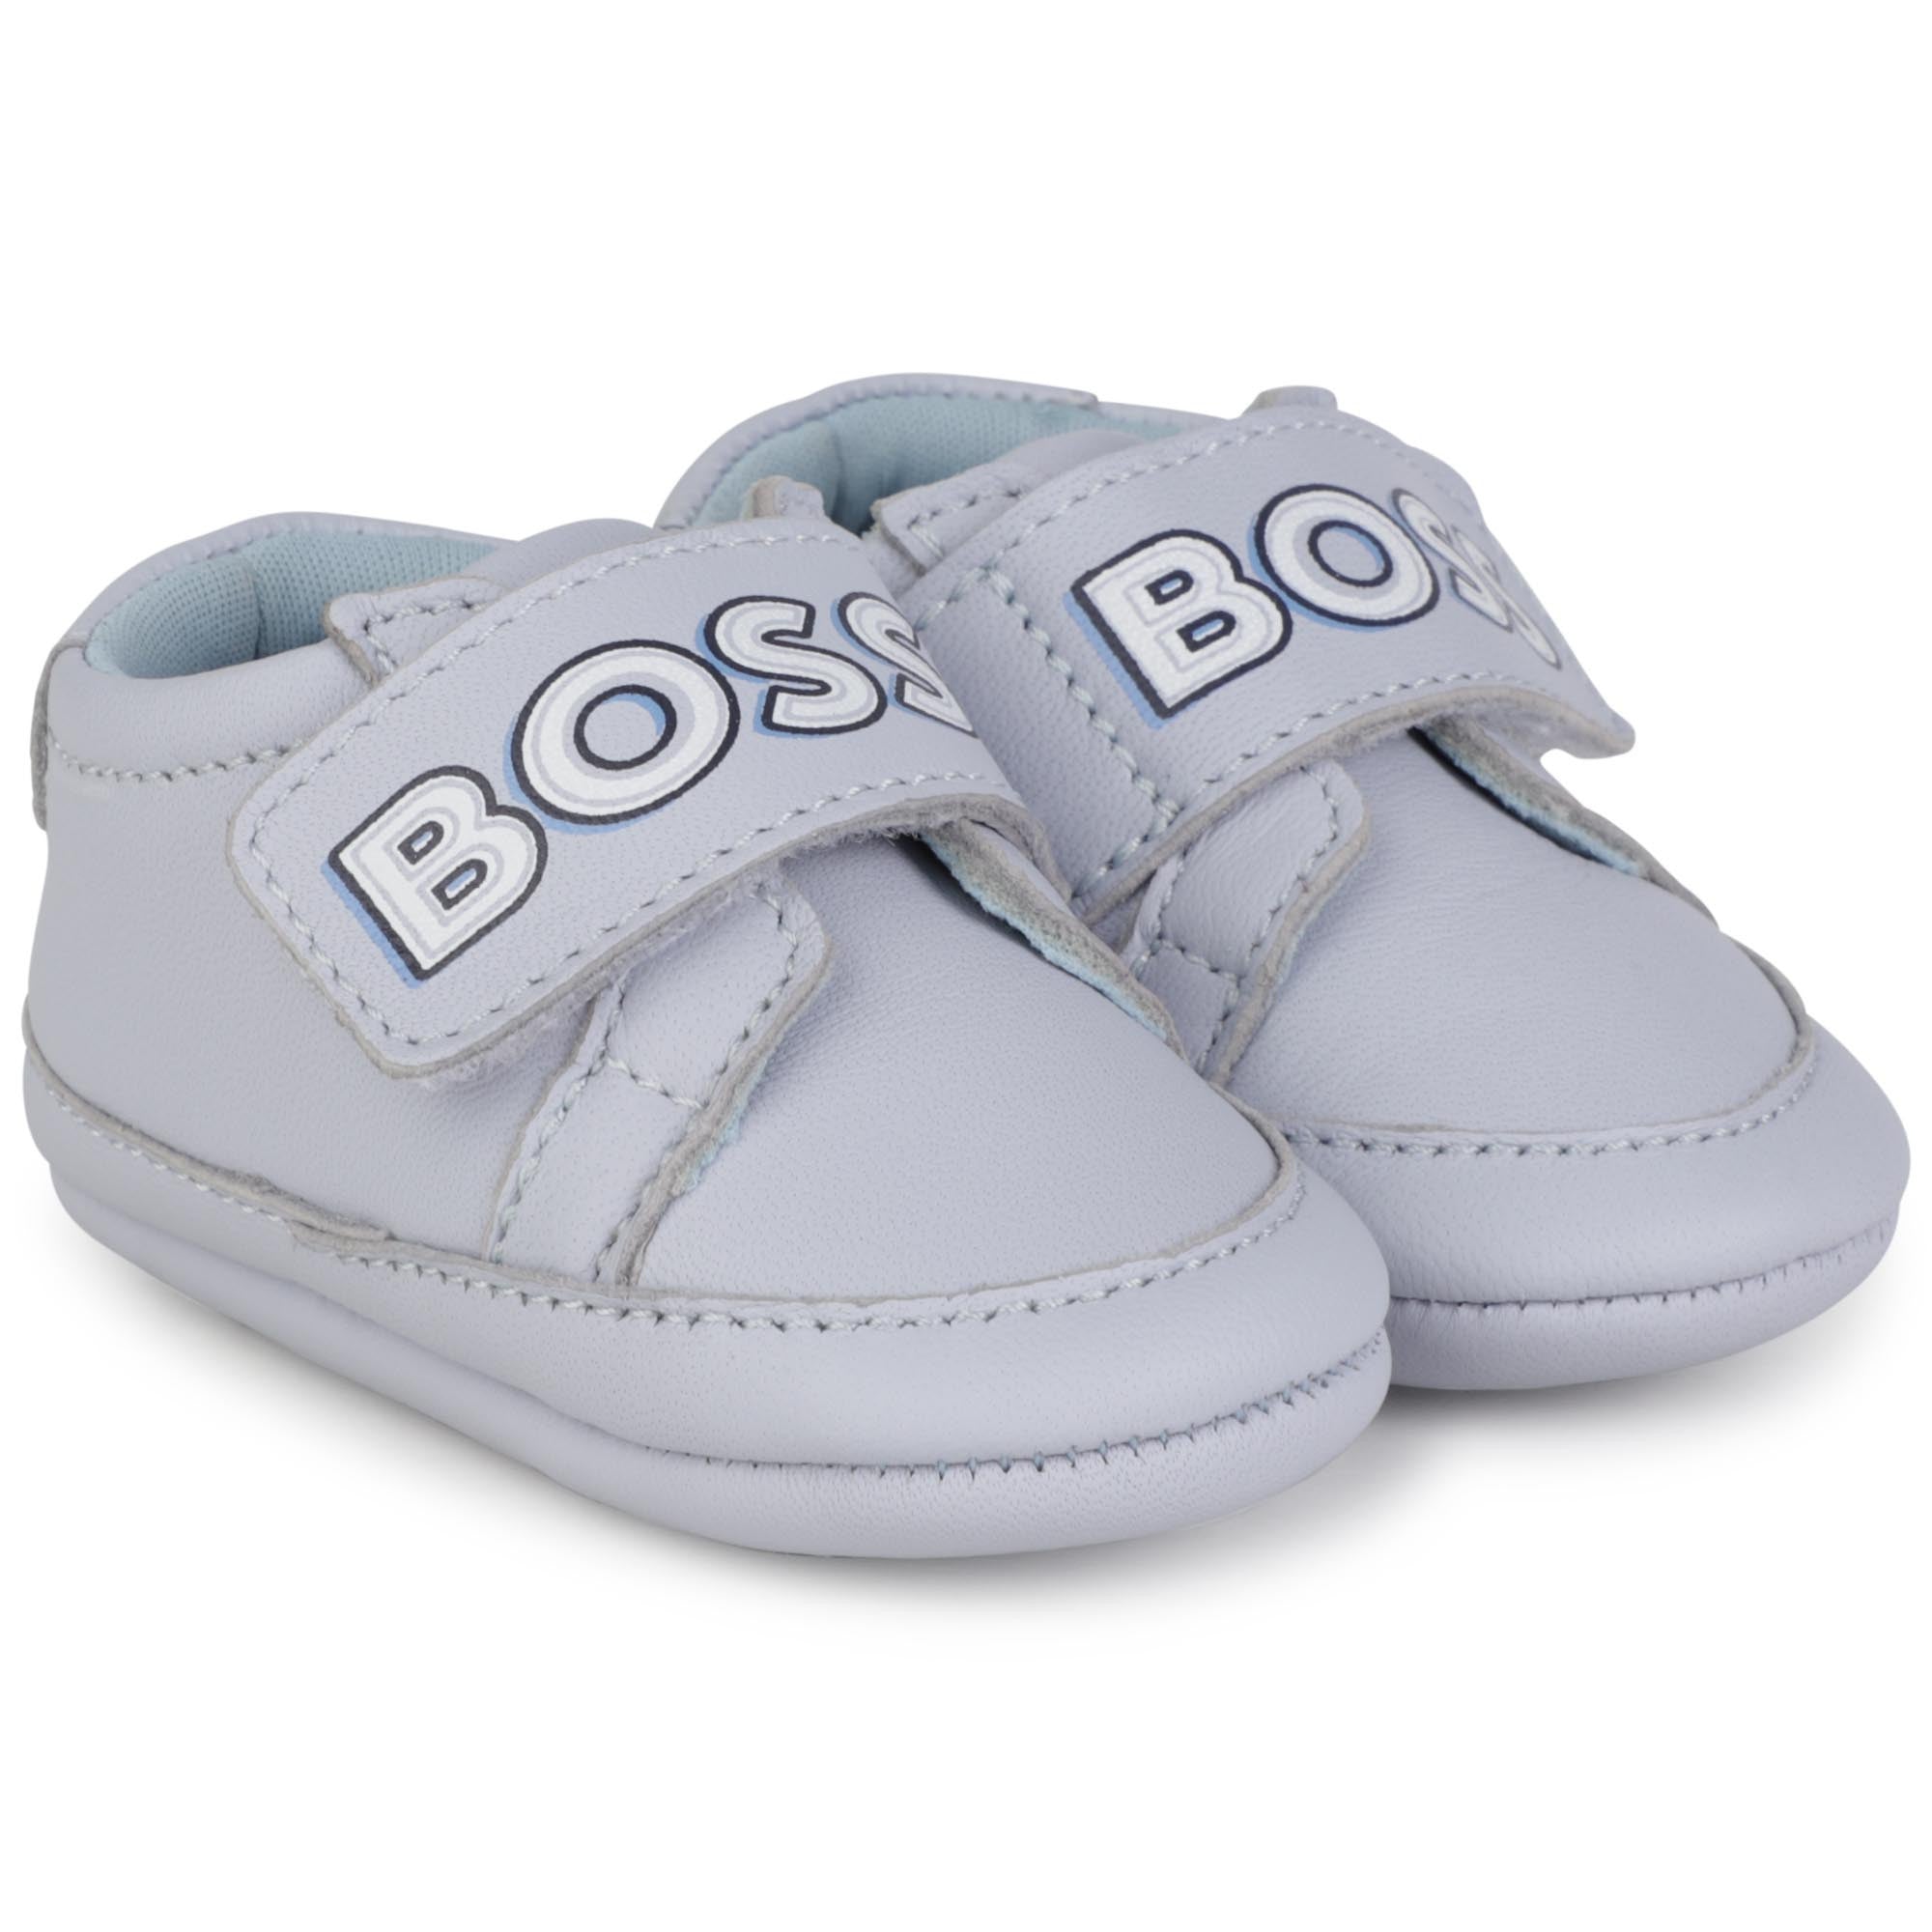 Boss chaussures pour bébé